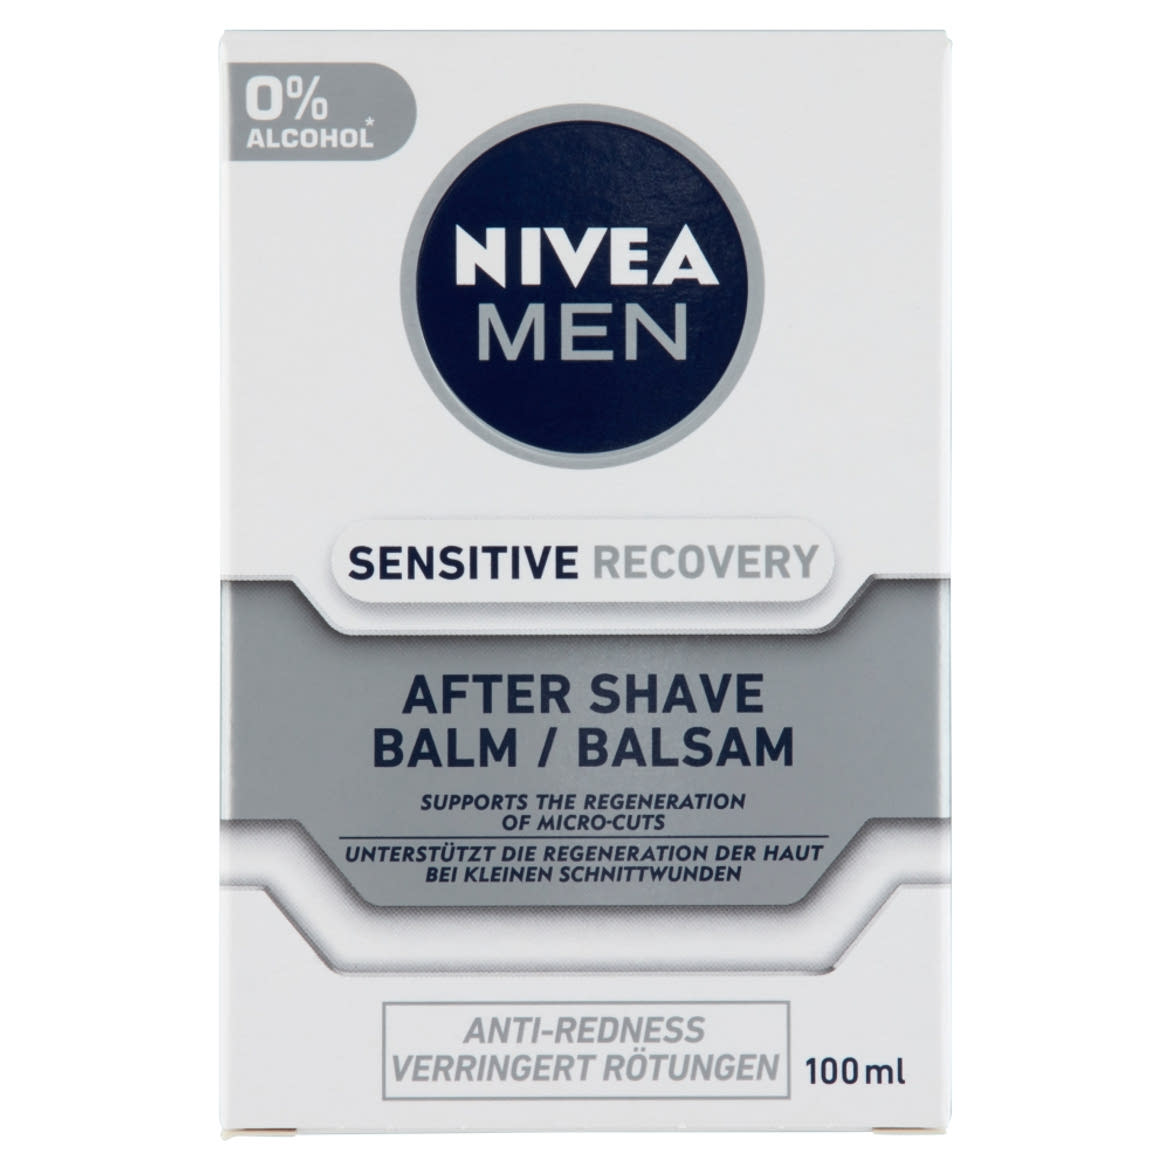 NIVEA MEN Sensitive Recovery after shave balzsam